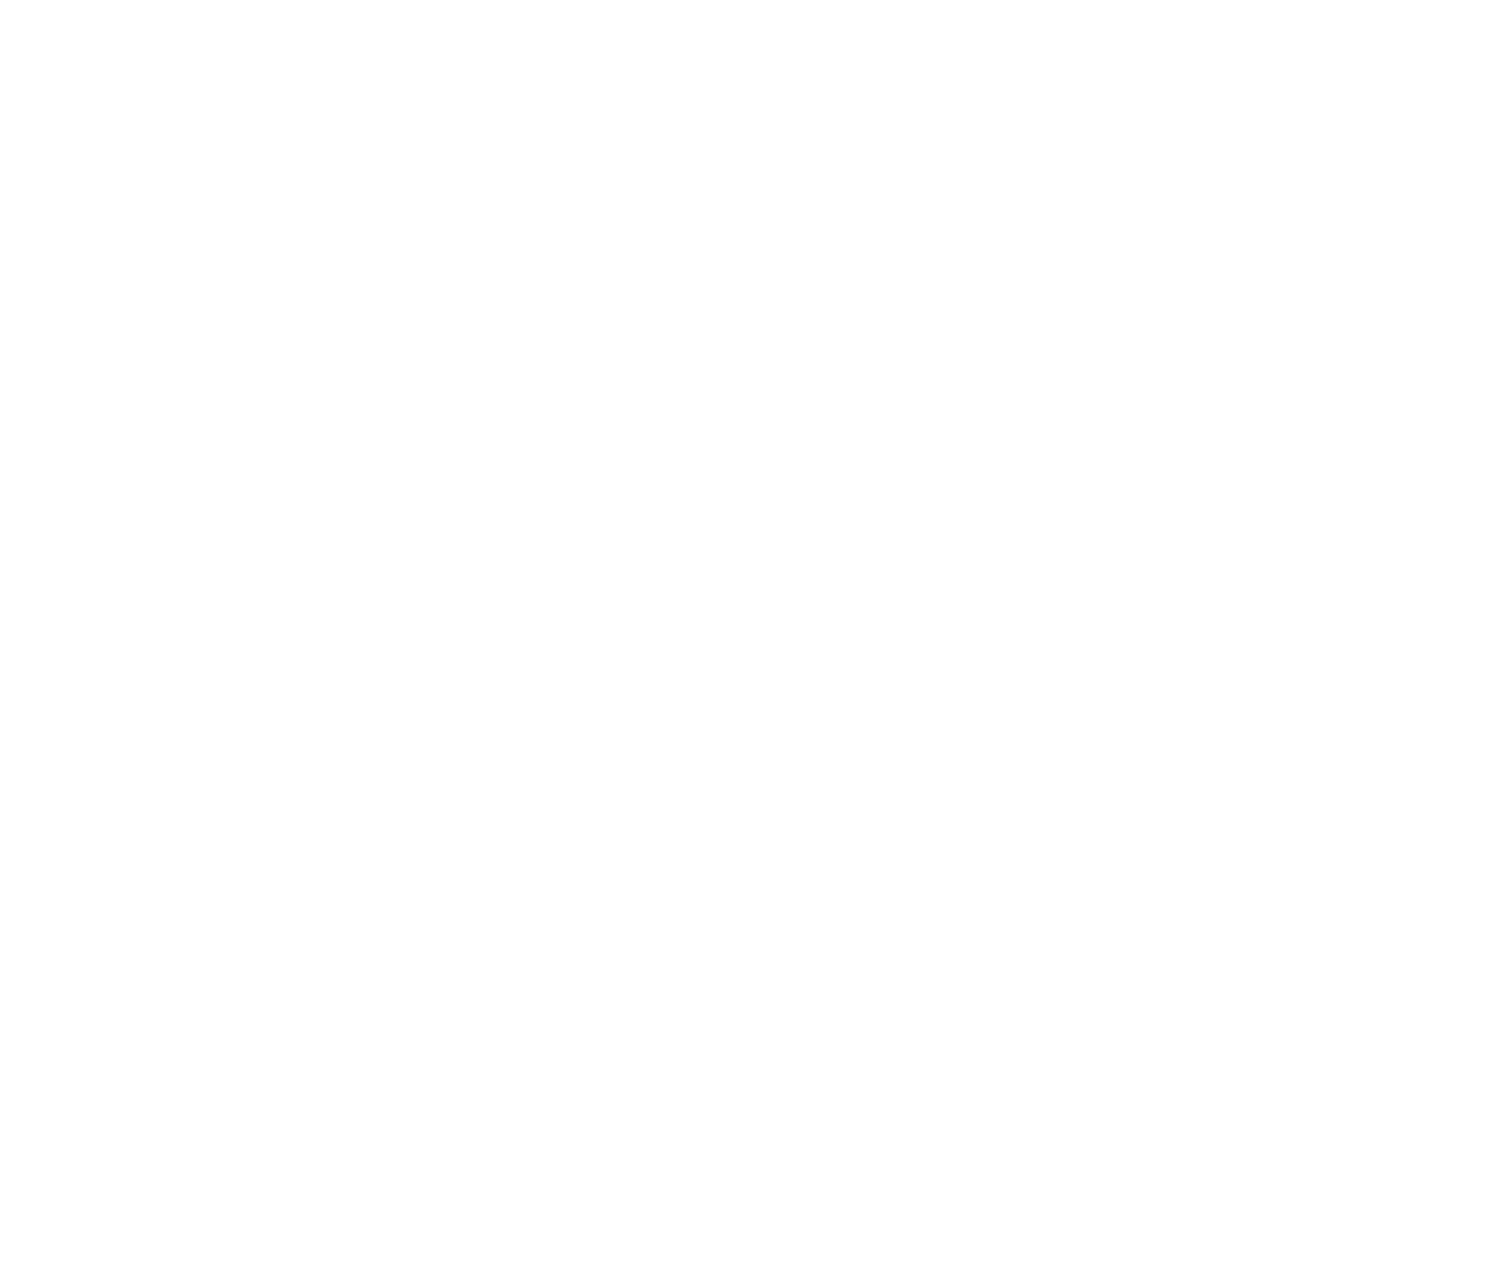 JMB Acupuncture